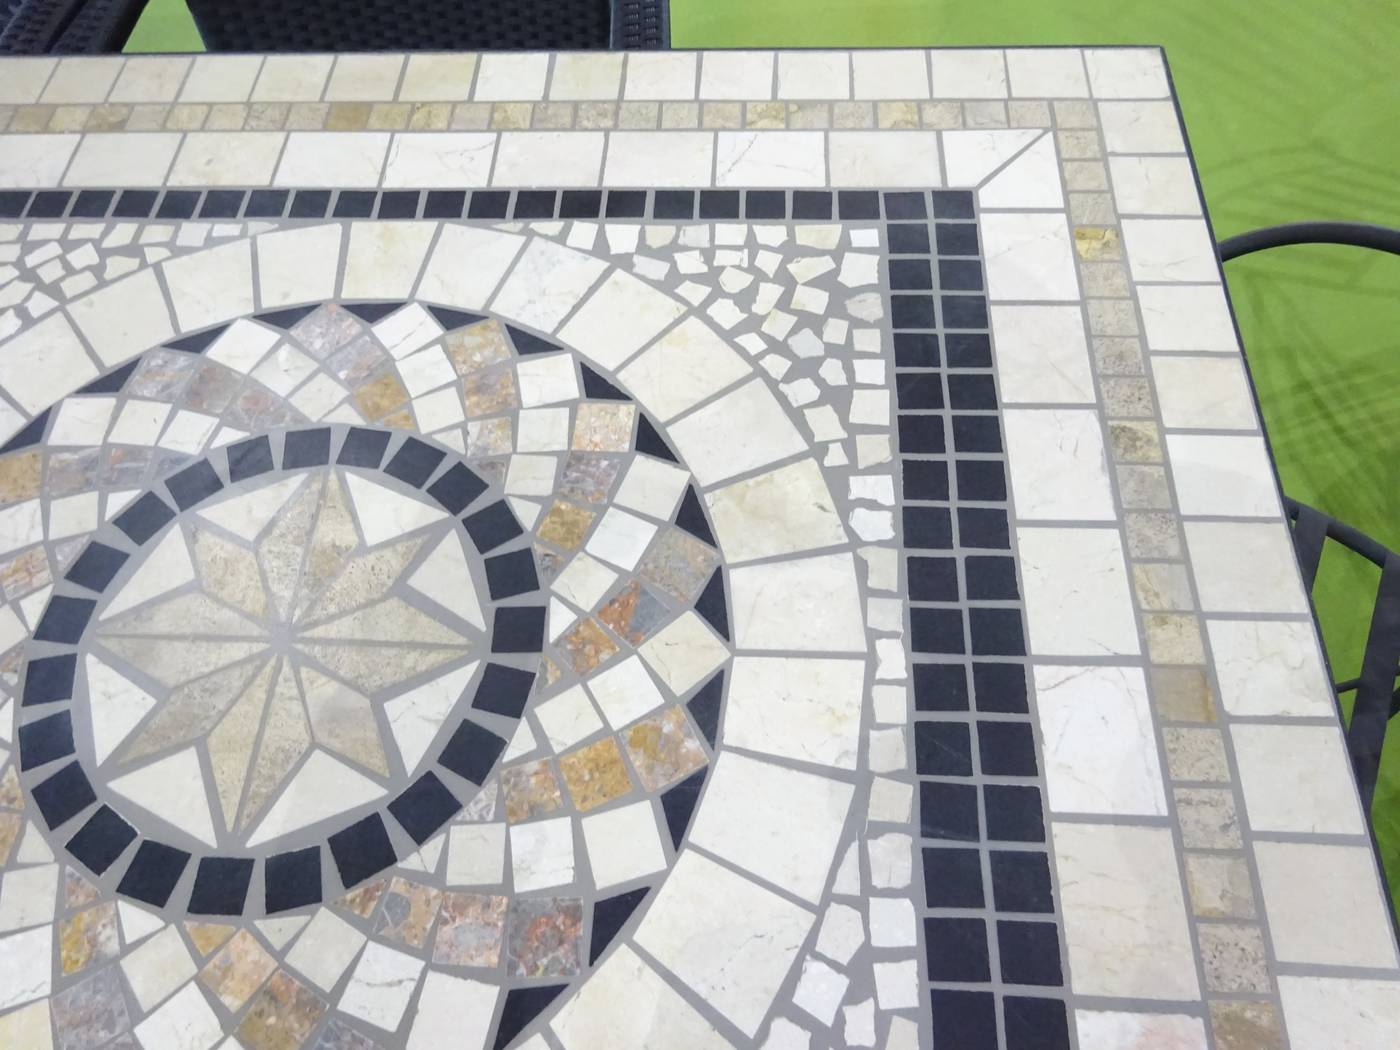 Set Mosaico Shifa-Ampurias 160-6 - Conjunto de forja color gris: 1 mesa con panel mosaico de marmol  + 6 sillones de ratán sintético + 6 cojines.